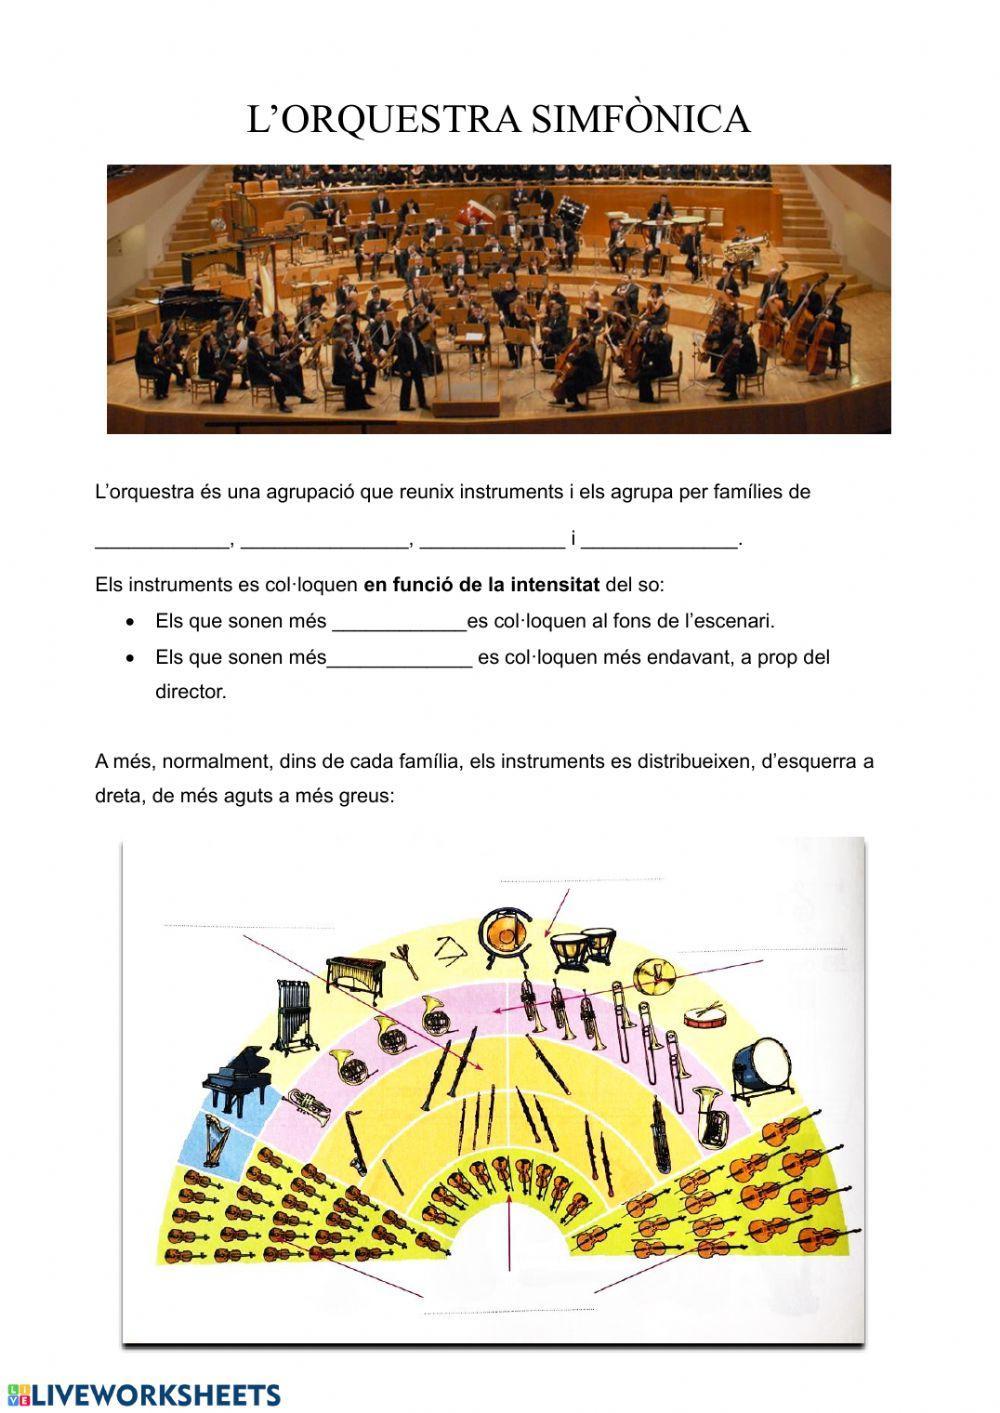 Distribució de l'orquestra